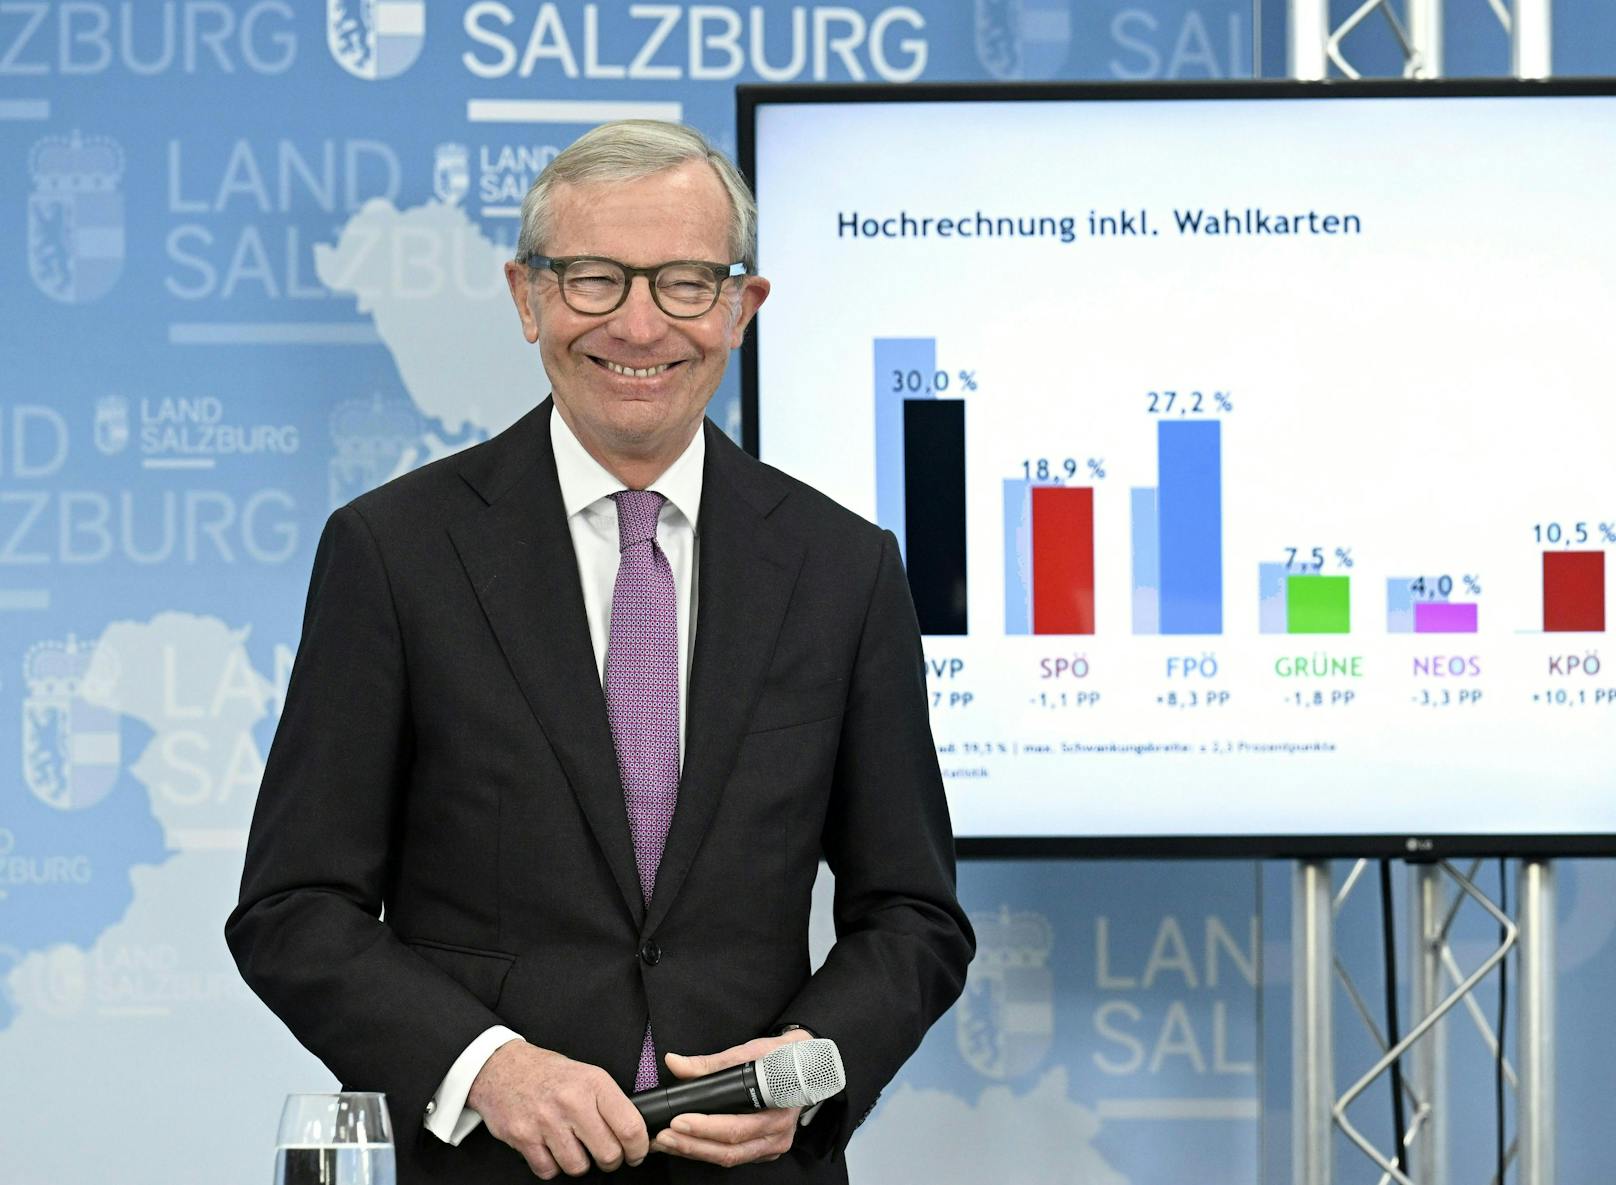 Wieder Erster: ÖVP-Landeshauptmann <strong>Wilfried Haslauer</strong> erreicht trotz Absturz knapp 30 Prozent der Stimmen.